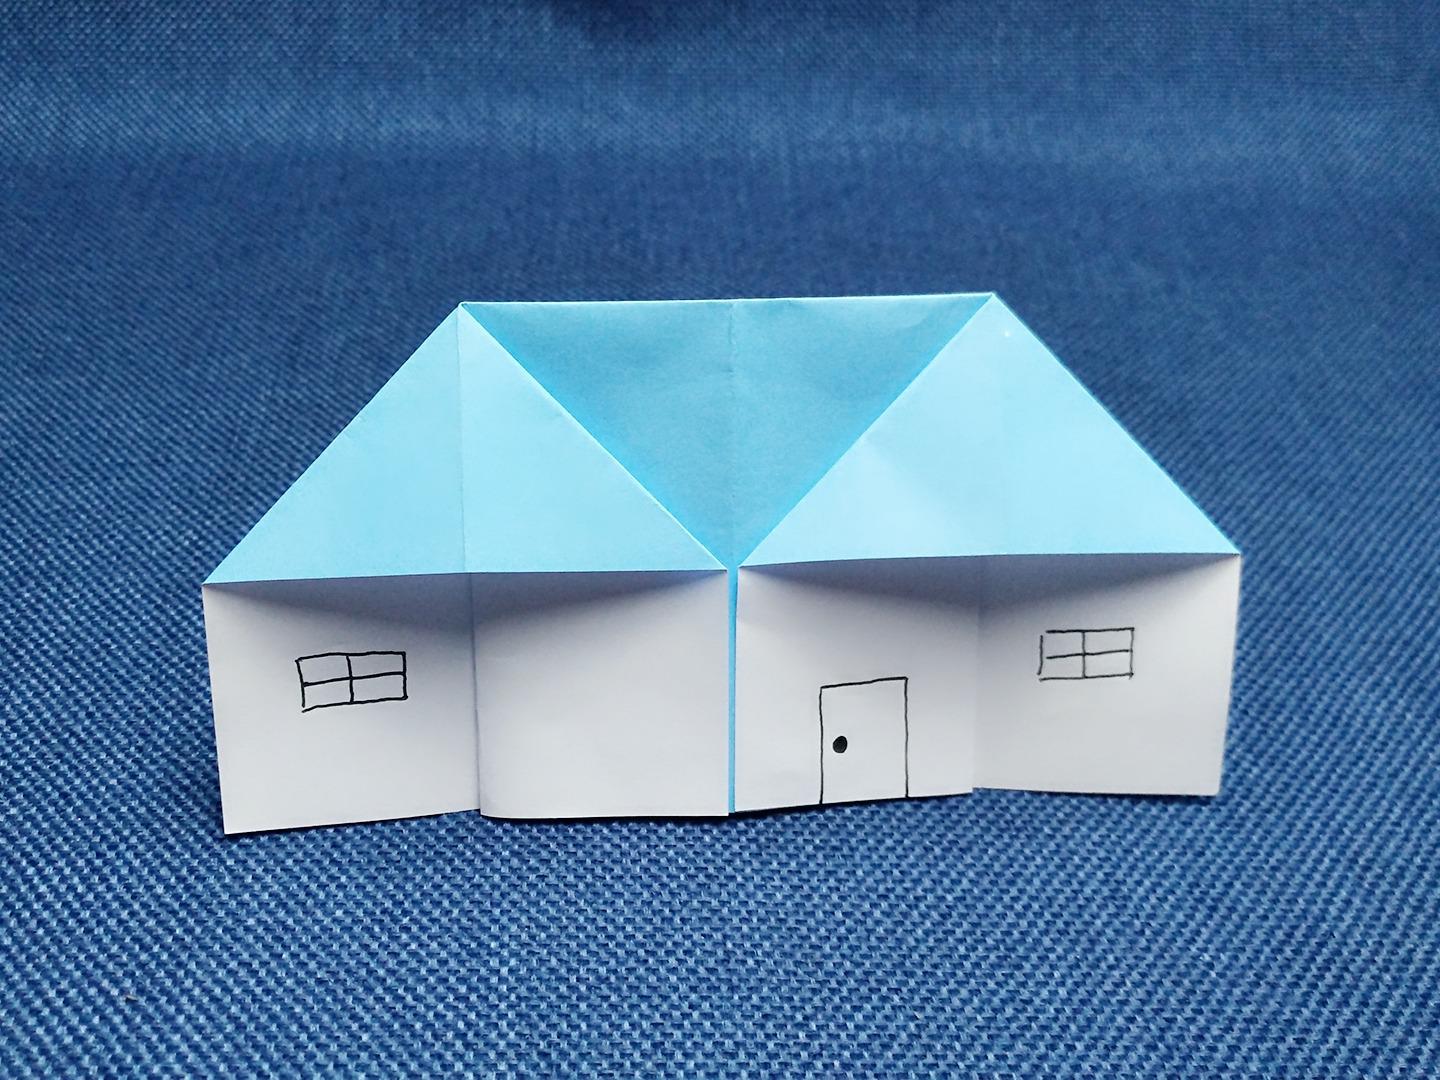 自制小型折叠房屋图片